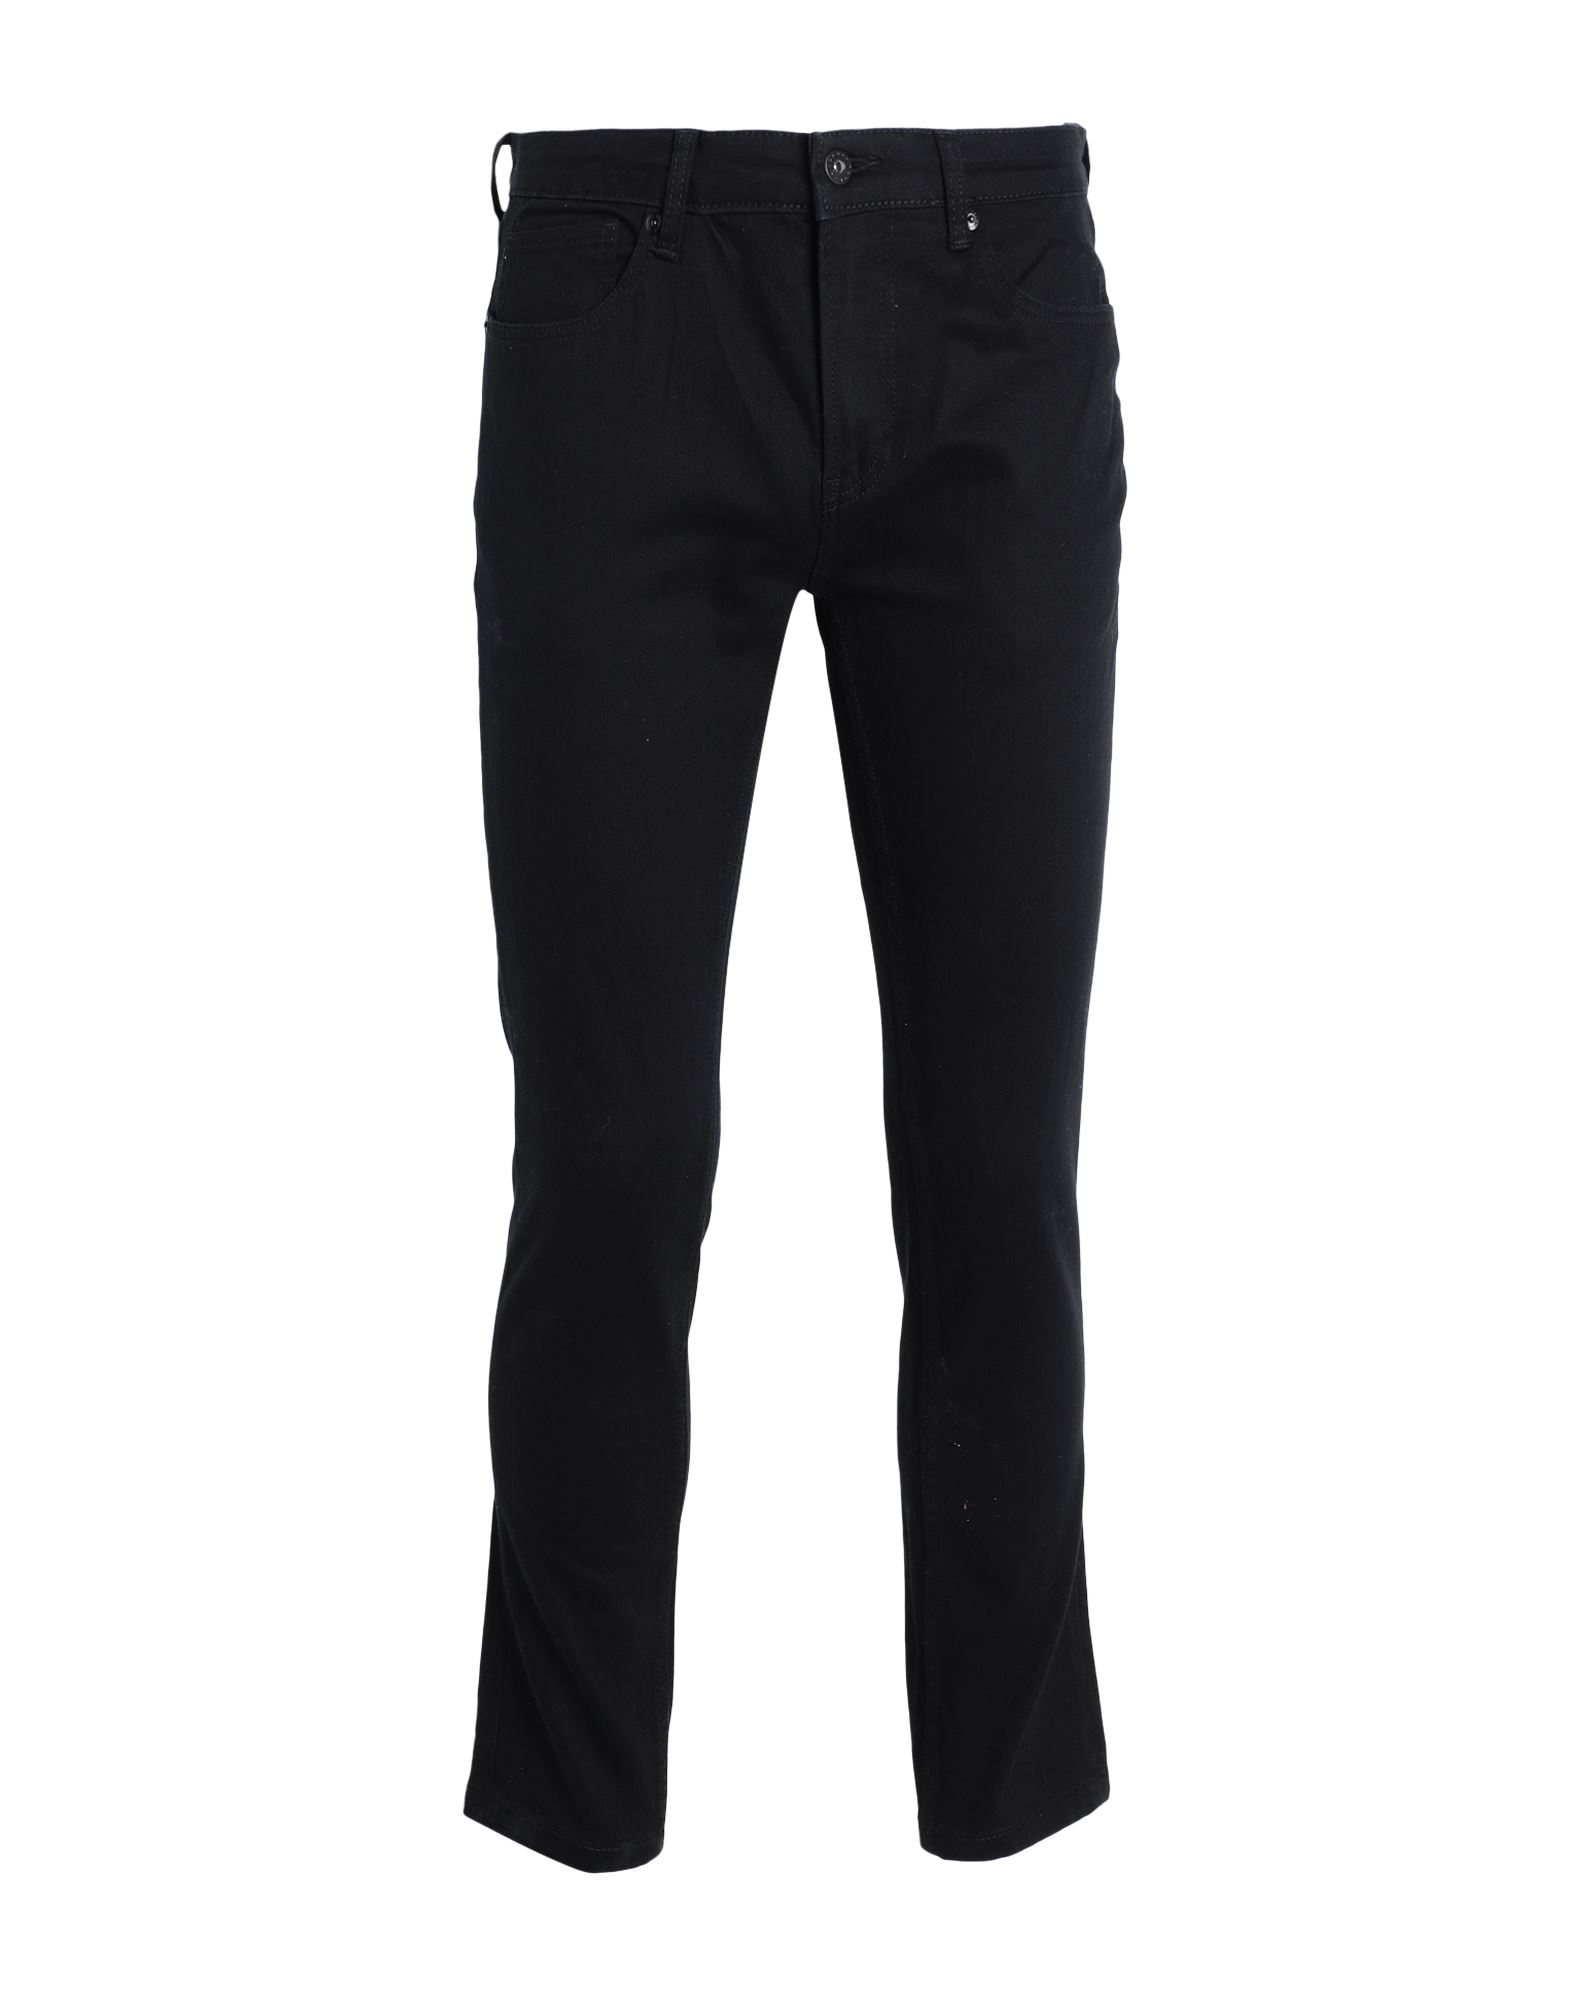 Topman Man Jeans Black Size 28w-32l Cotton, Elastane